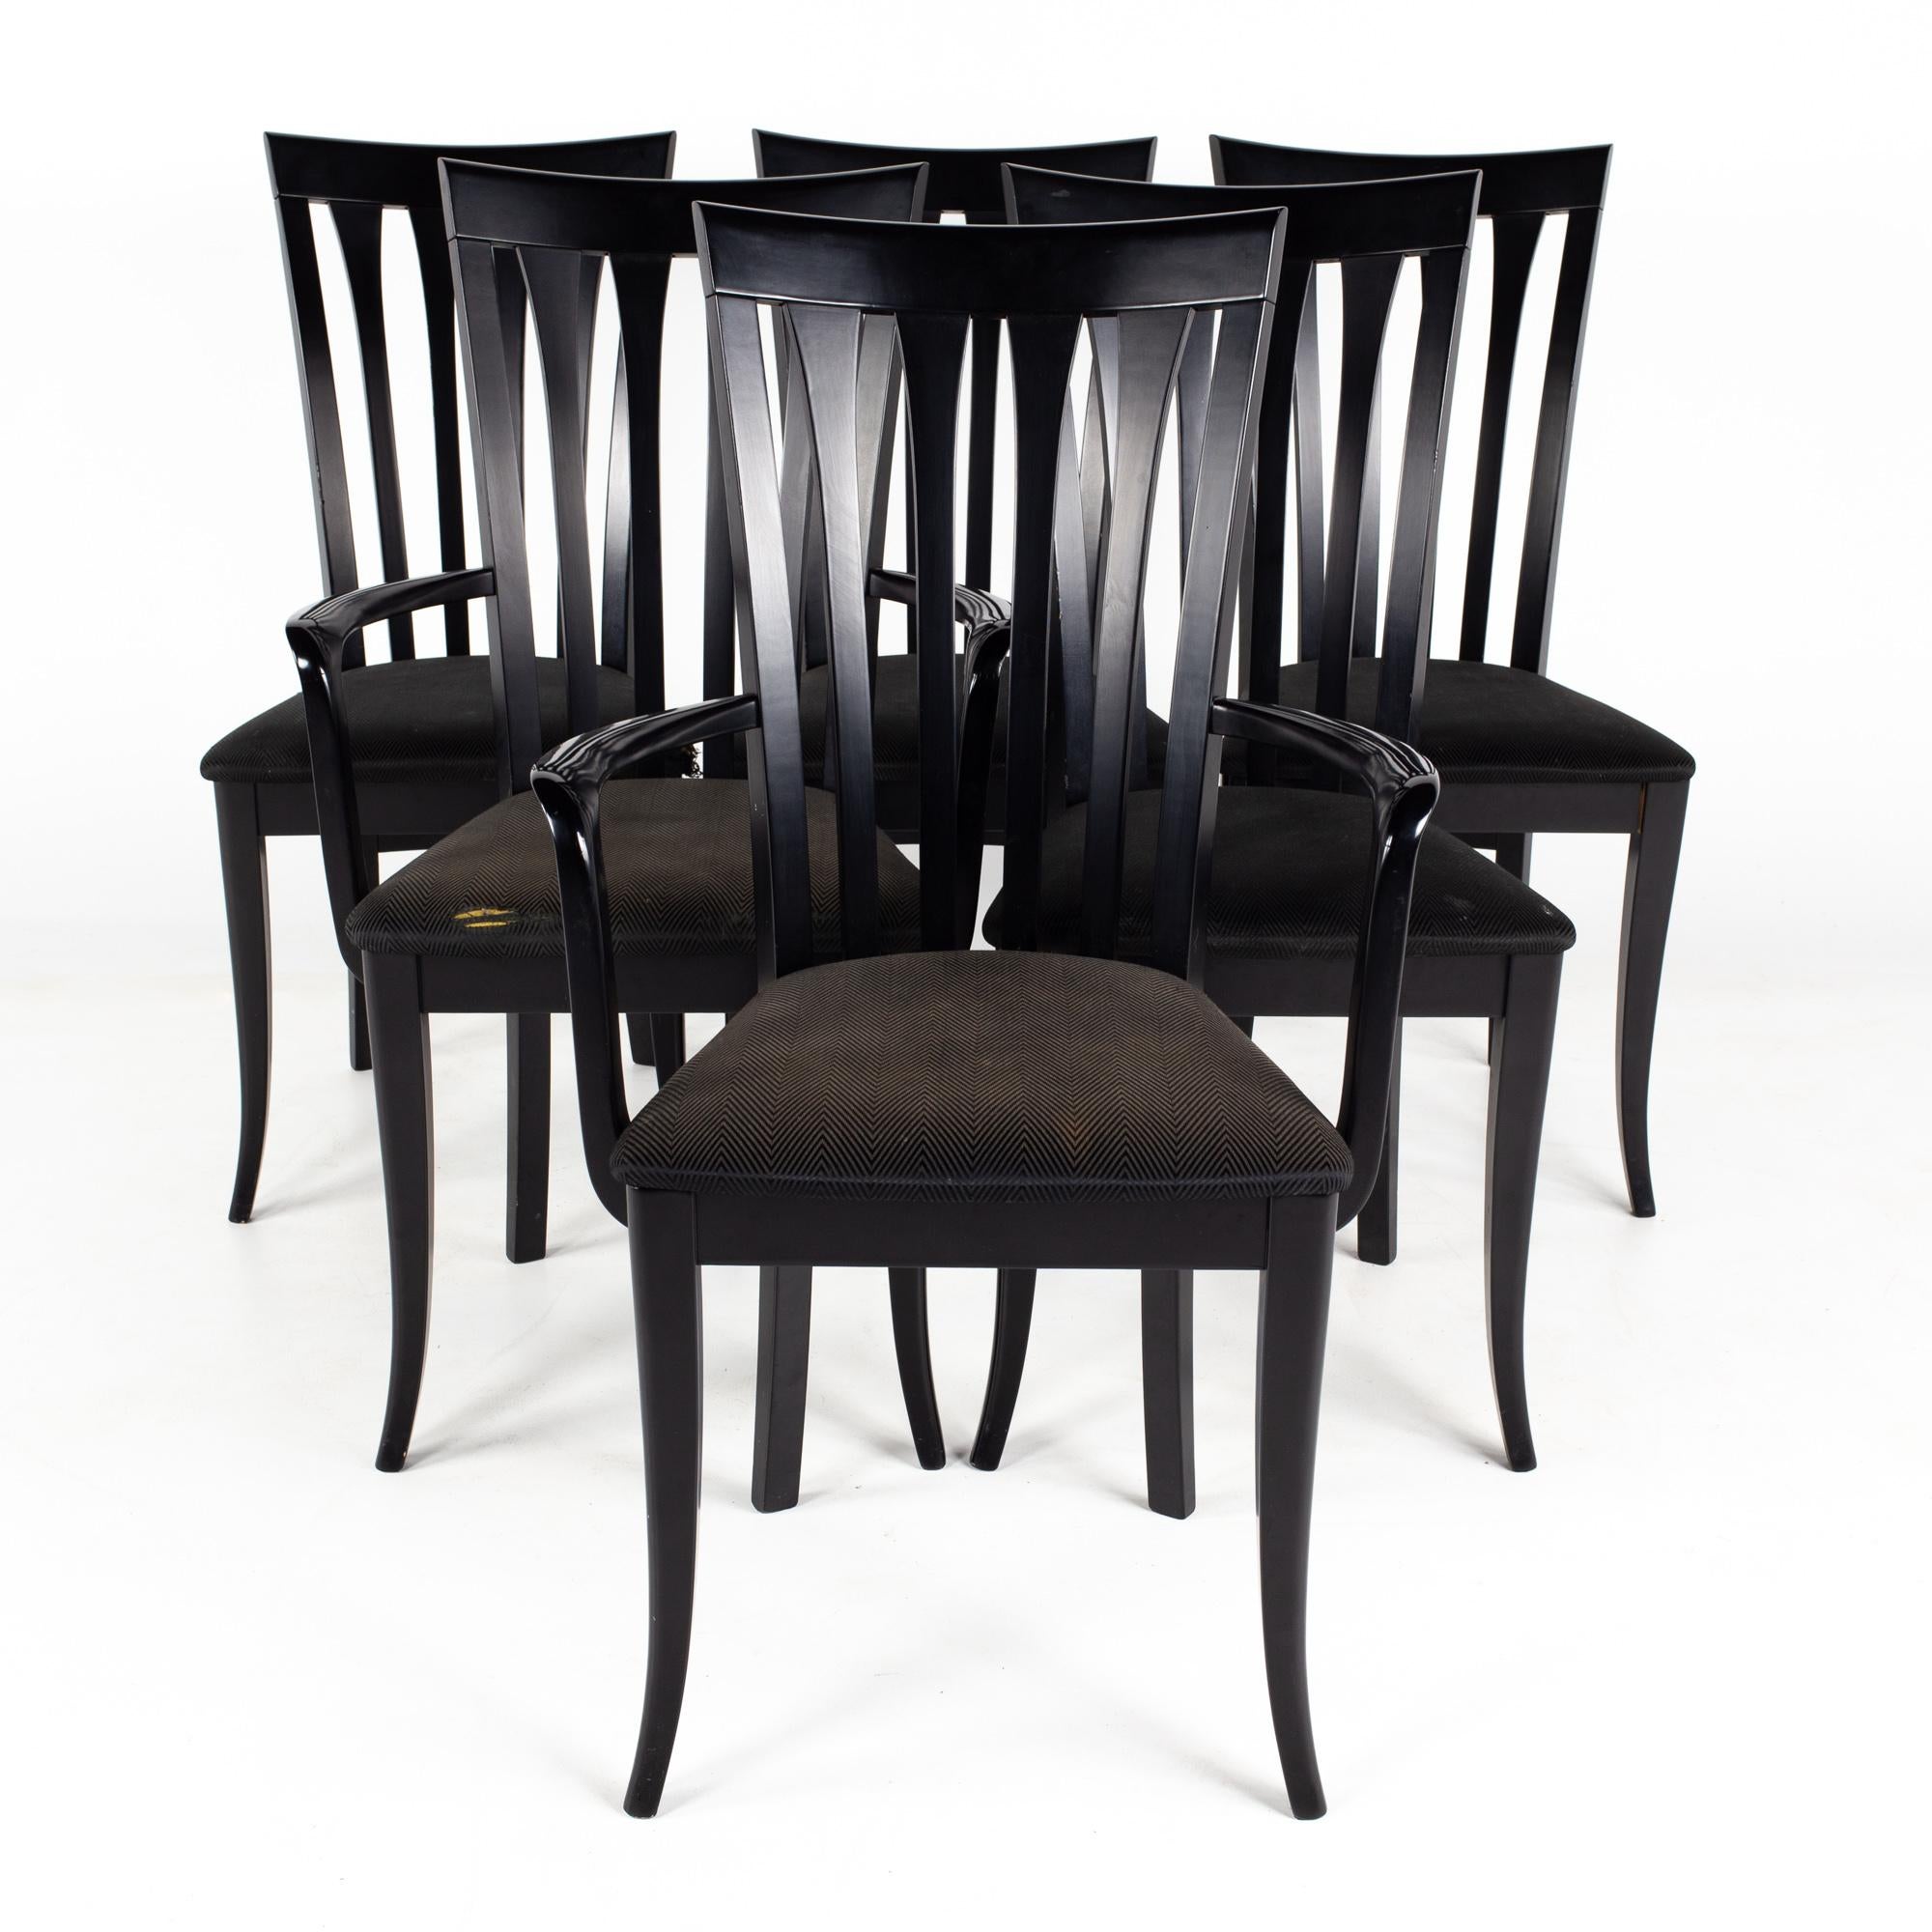 A. Sibau, sedie da pranzo italiane con schienale alto di colore nero - Set di 6 pezzi

Ogni sedia misura: 18,5 larghezza x 20,5 profondità x 38,5 pollici di altezza, con un'altezza della seduta di 18 e un'altezza dei braccioli di 26,5